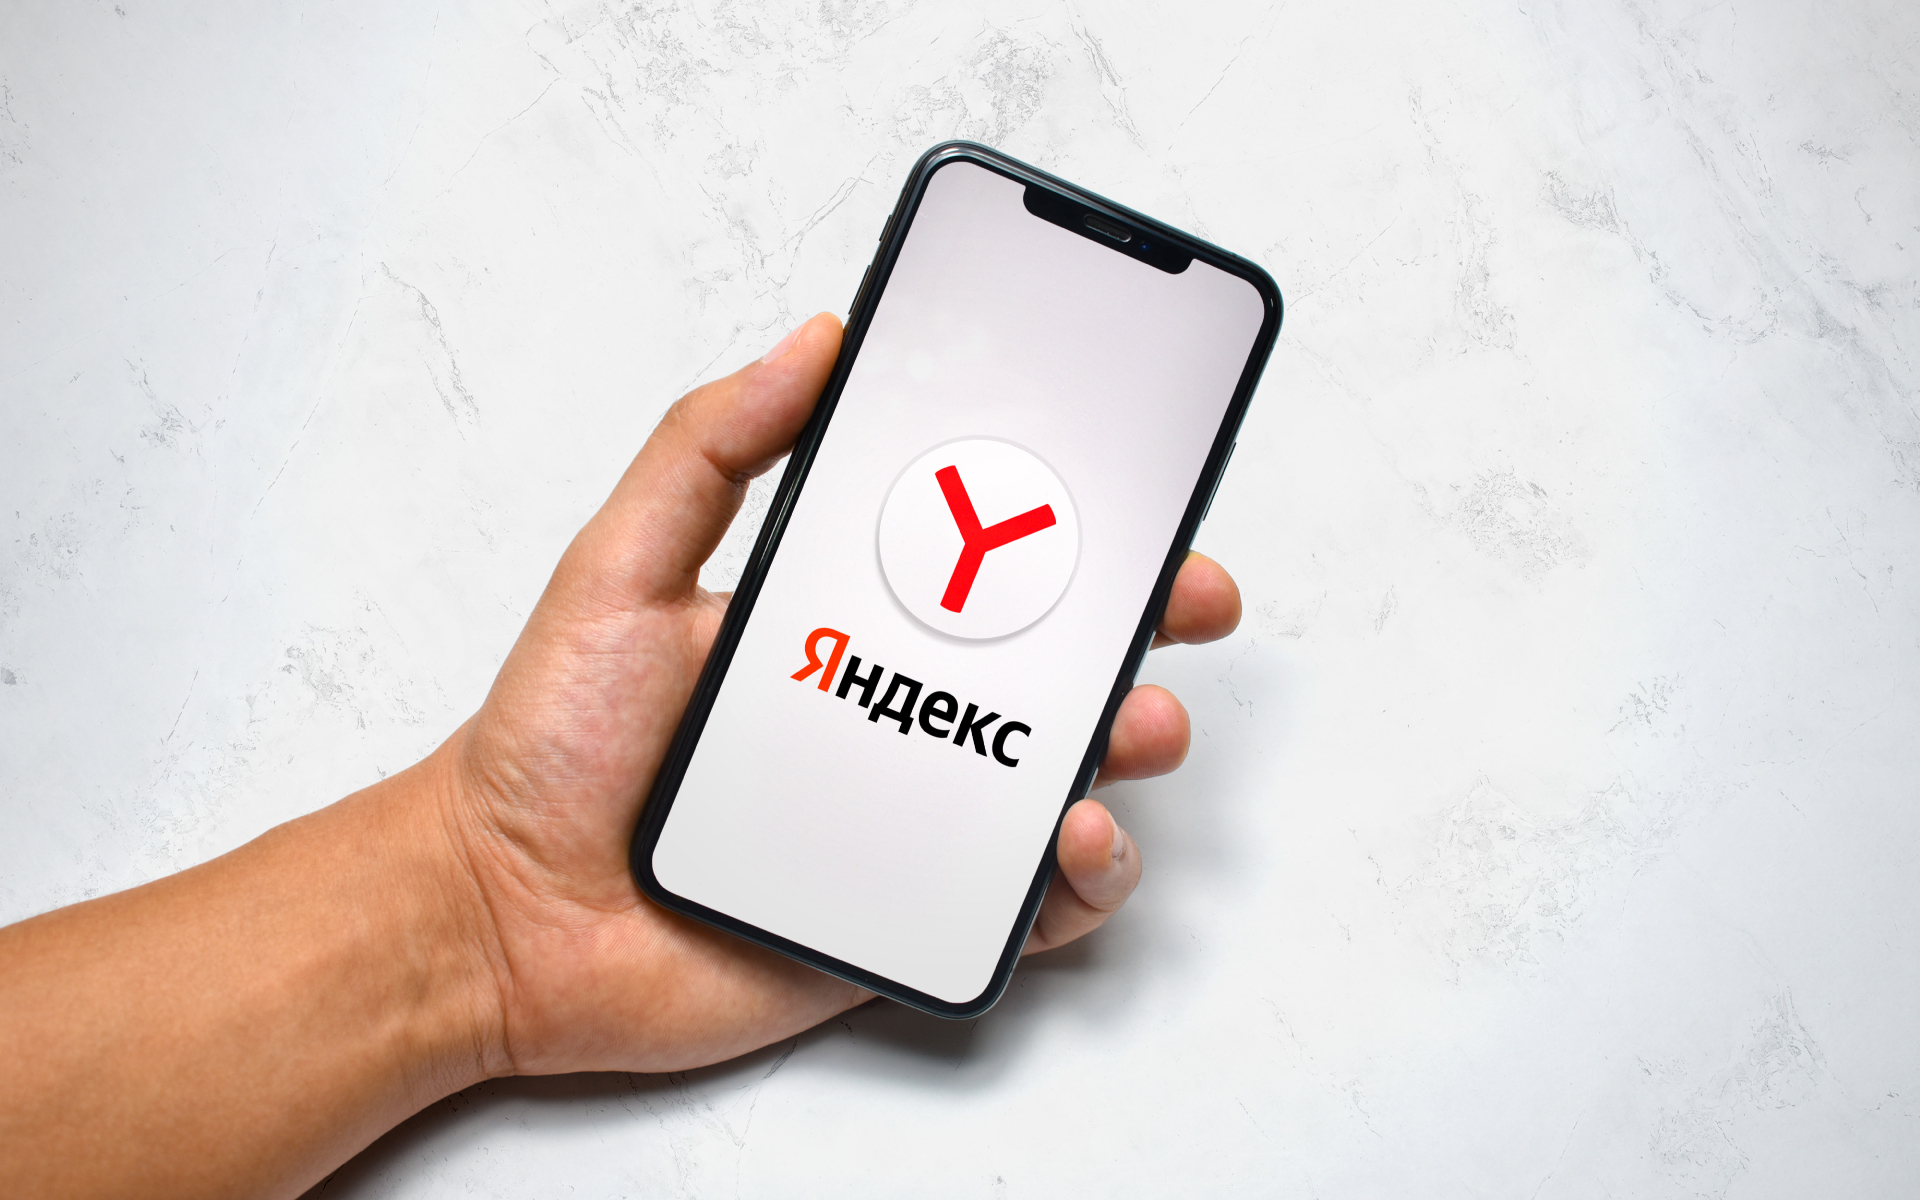 Яндекс: Google не даёт пользоваться Яндексом по умолчанию